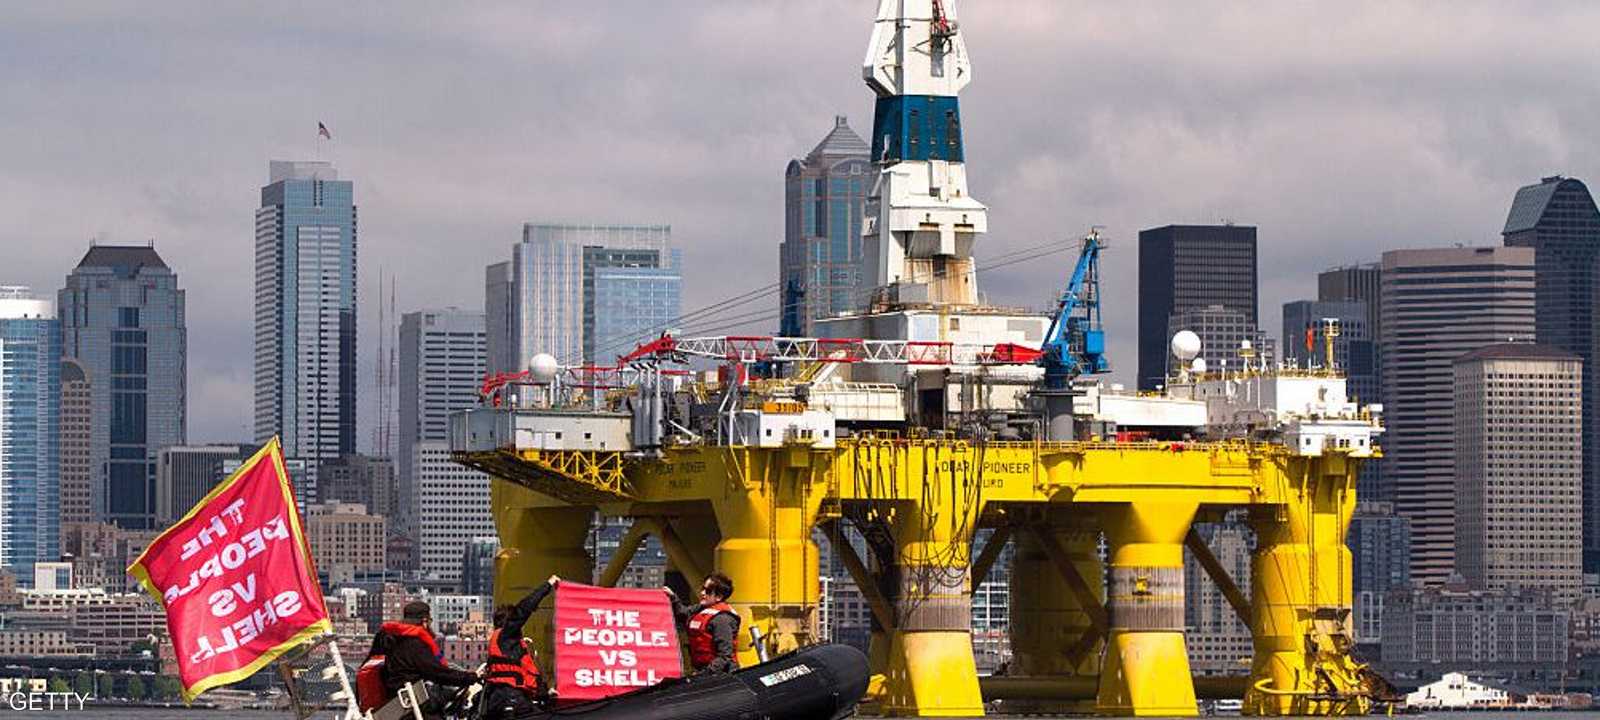 منصة نفط أميركية في طريقها إلى آلاسكا للتنقيب عن النفط